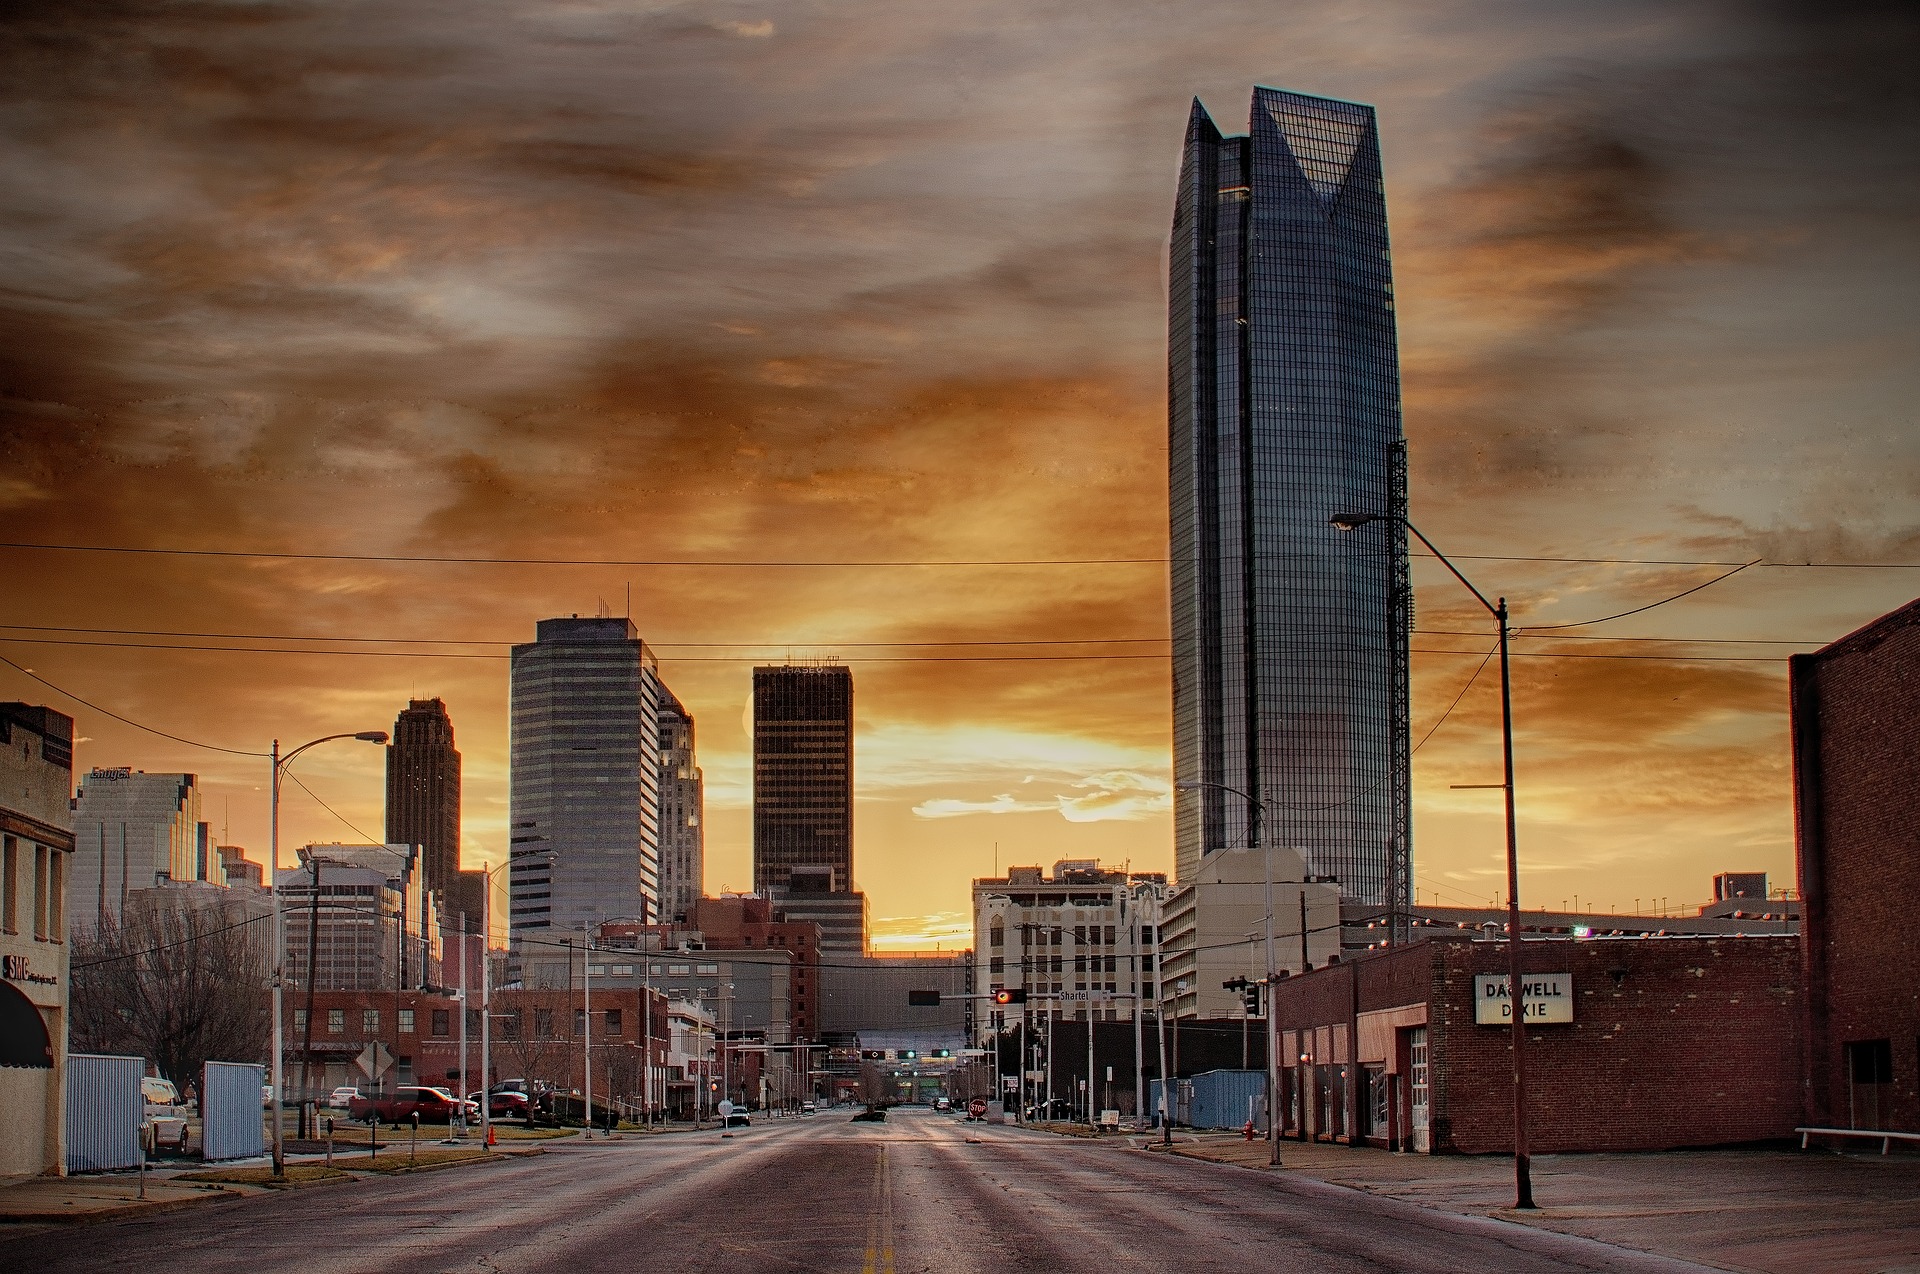 Oklahoma City, OK - The Ultimate Wine Run